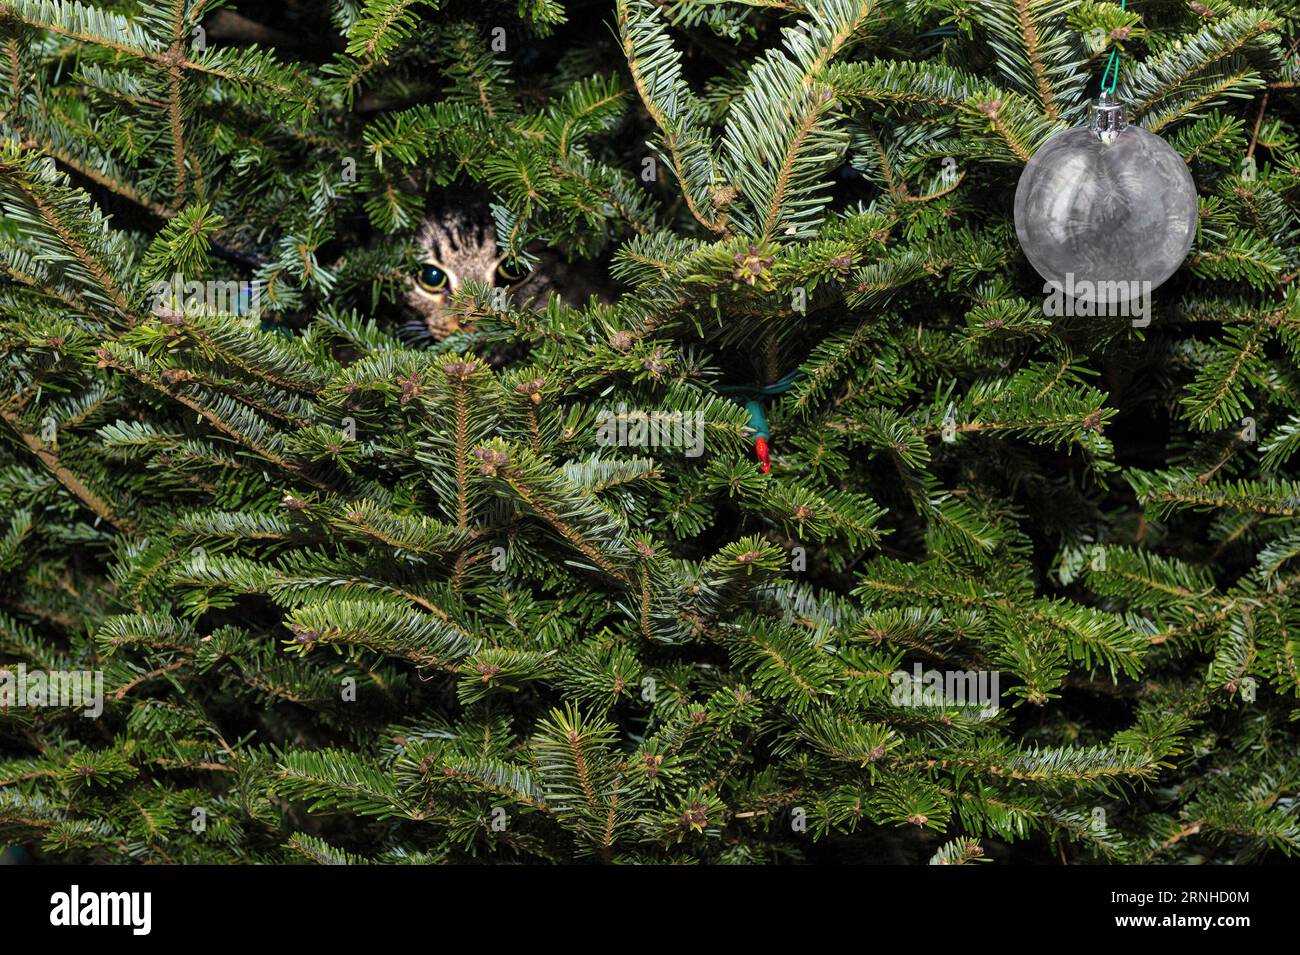 Un chaton mignon regardant à travers les branches d'un arbre de Noël vivant. Fond vert de vacances avec les yeux d'un chat mignon adorable et arbre d'épicéa. Banque D'Images